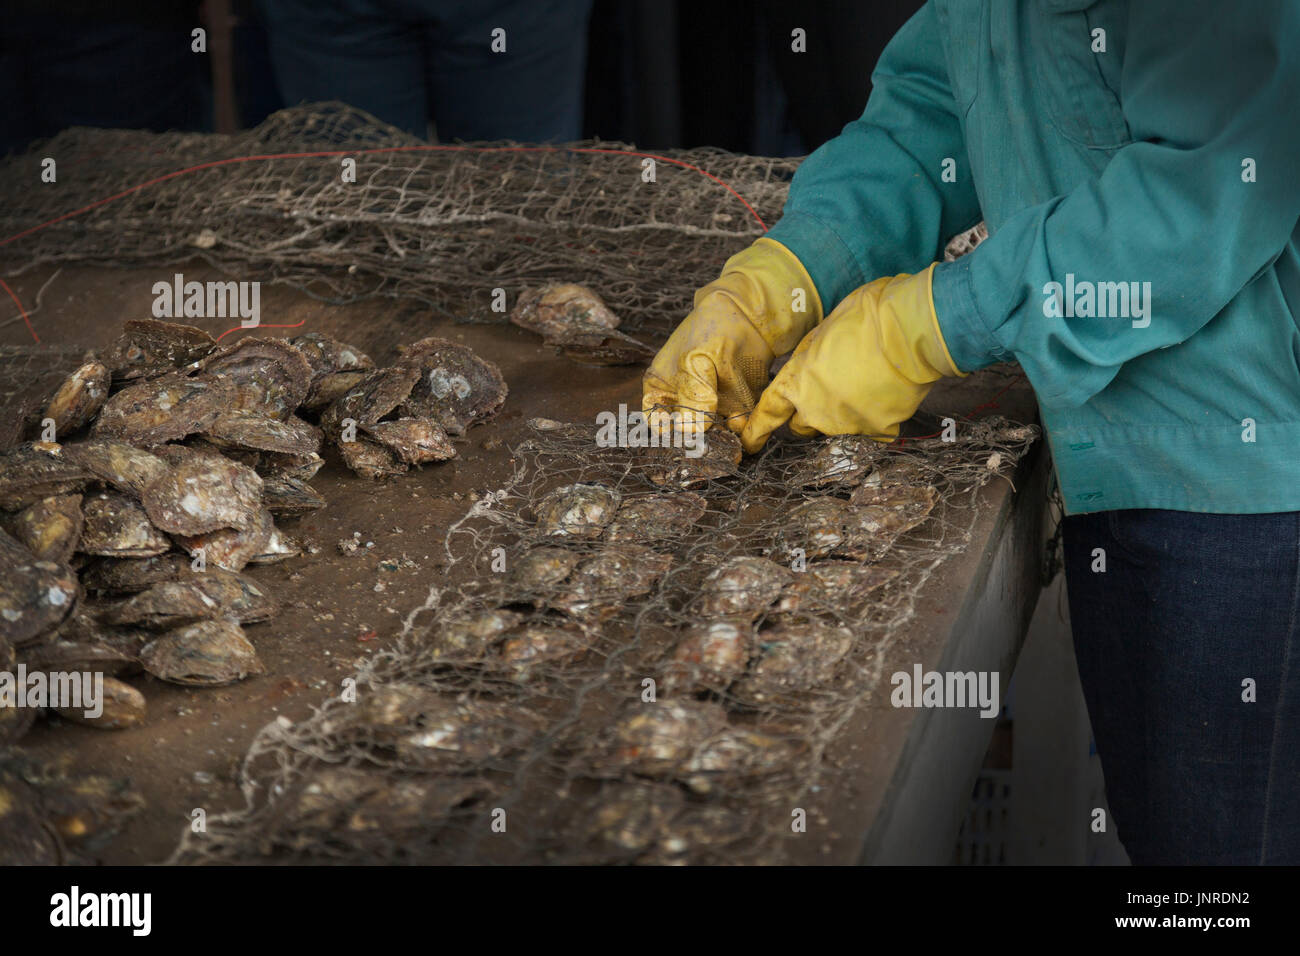 La baie d'Halong, Vietnam, pearl travailleur agricole à la collecte des huîtres d'élevage Banque D'Images